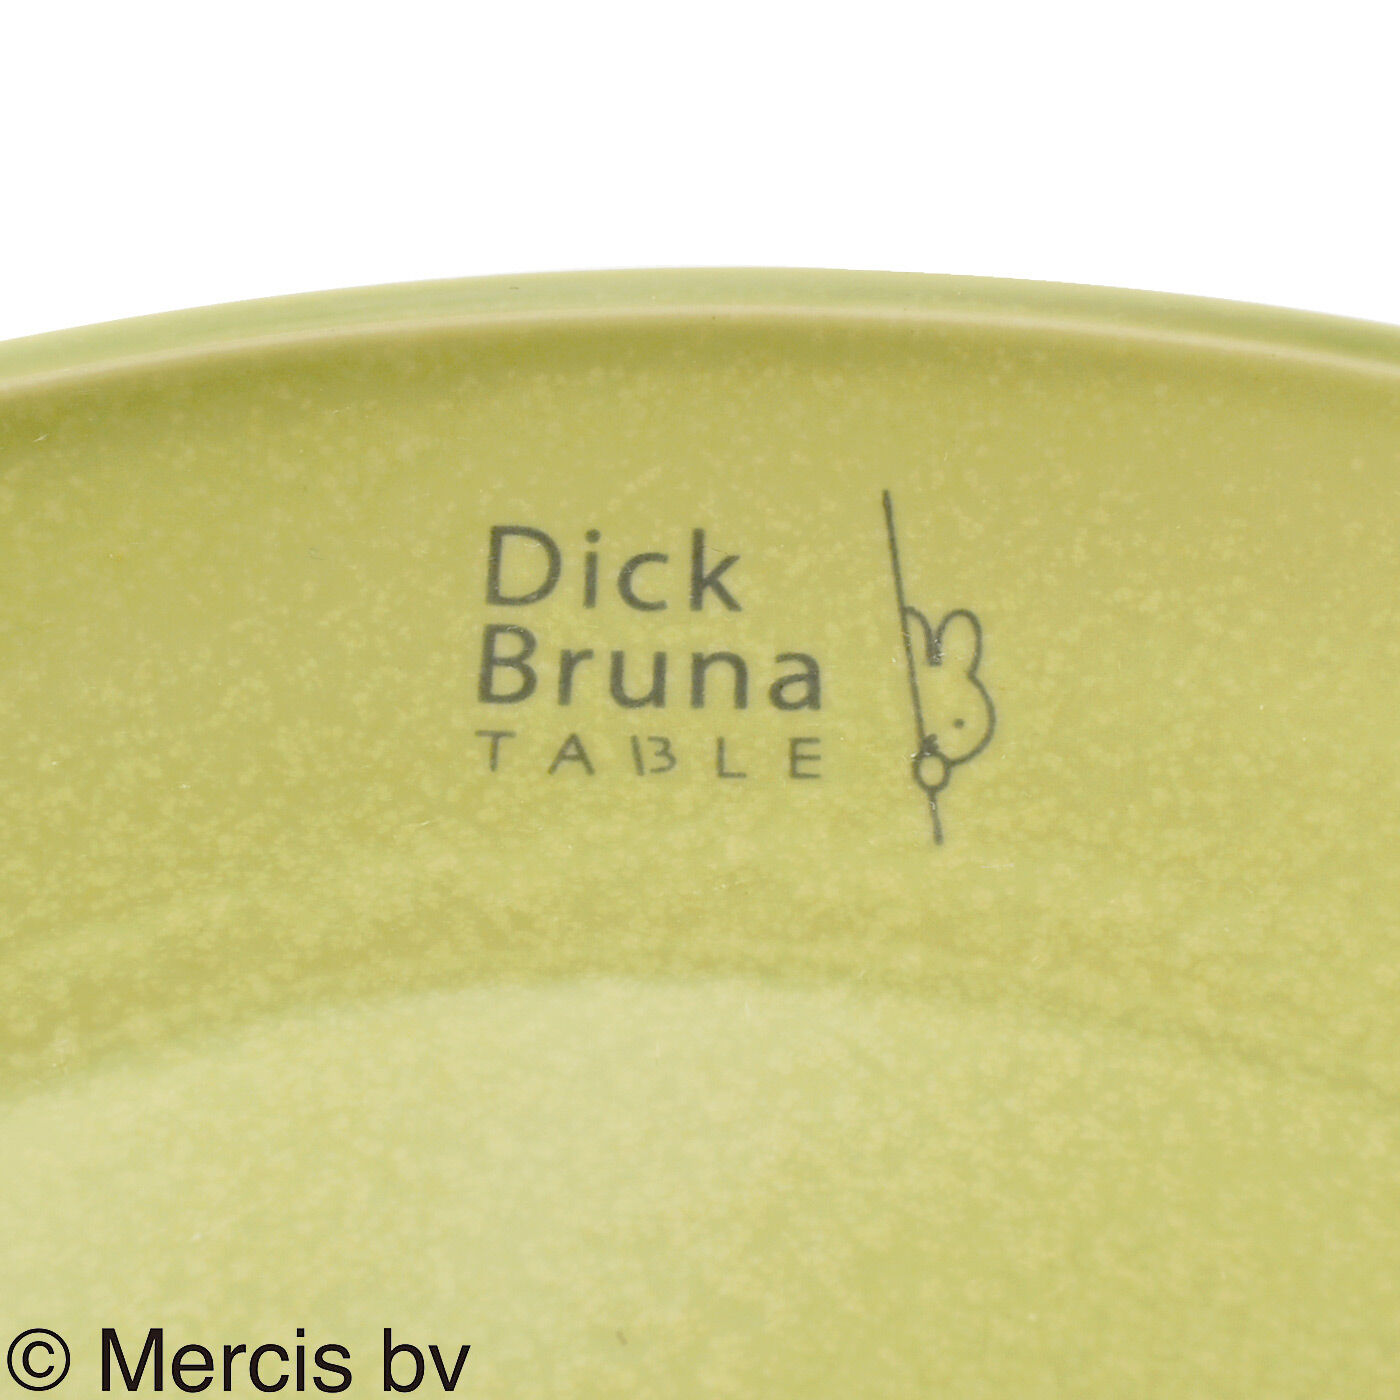 ディック・ブルーナ テーブル|Dick Bruna TABLE  テーブルを華やかに彩るプレート〈Ｌ〉の会|ロゴが入っています